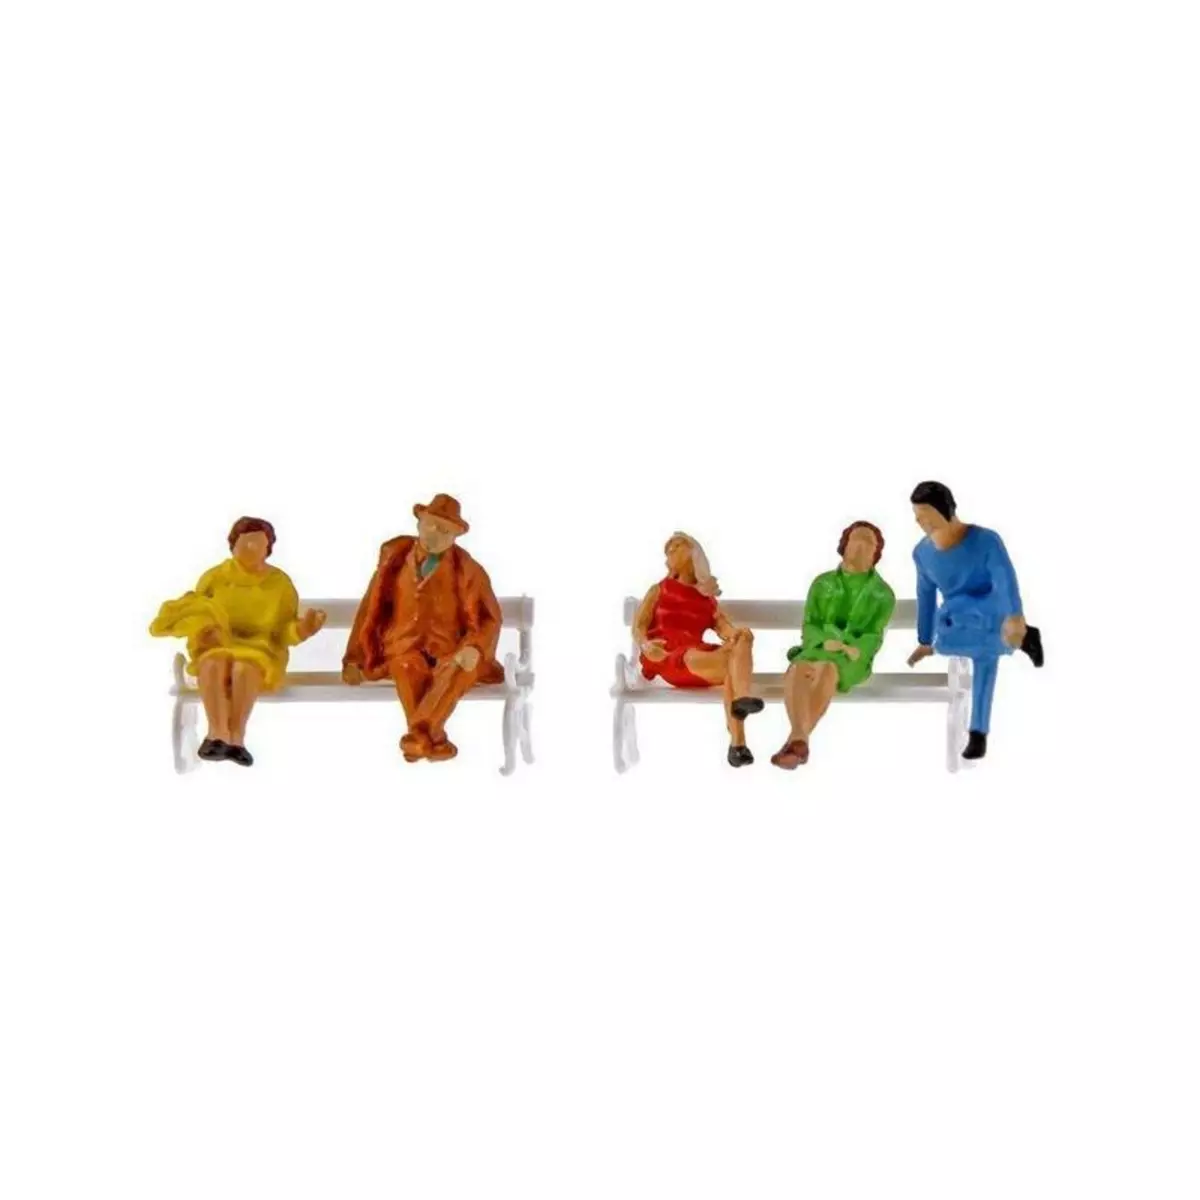 Preiser 1/87 Ème Modélisme HO Figurines : Personnages assis